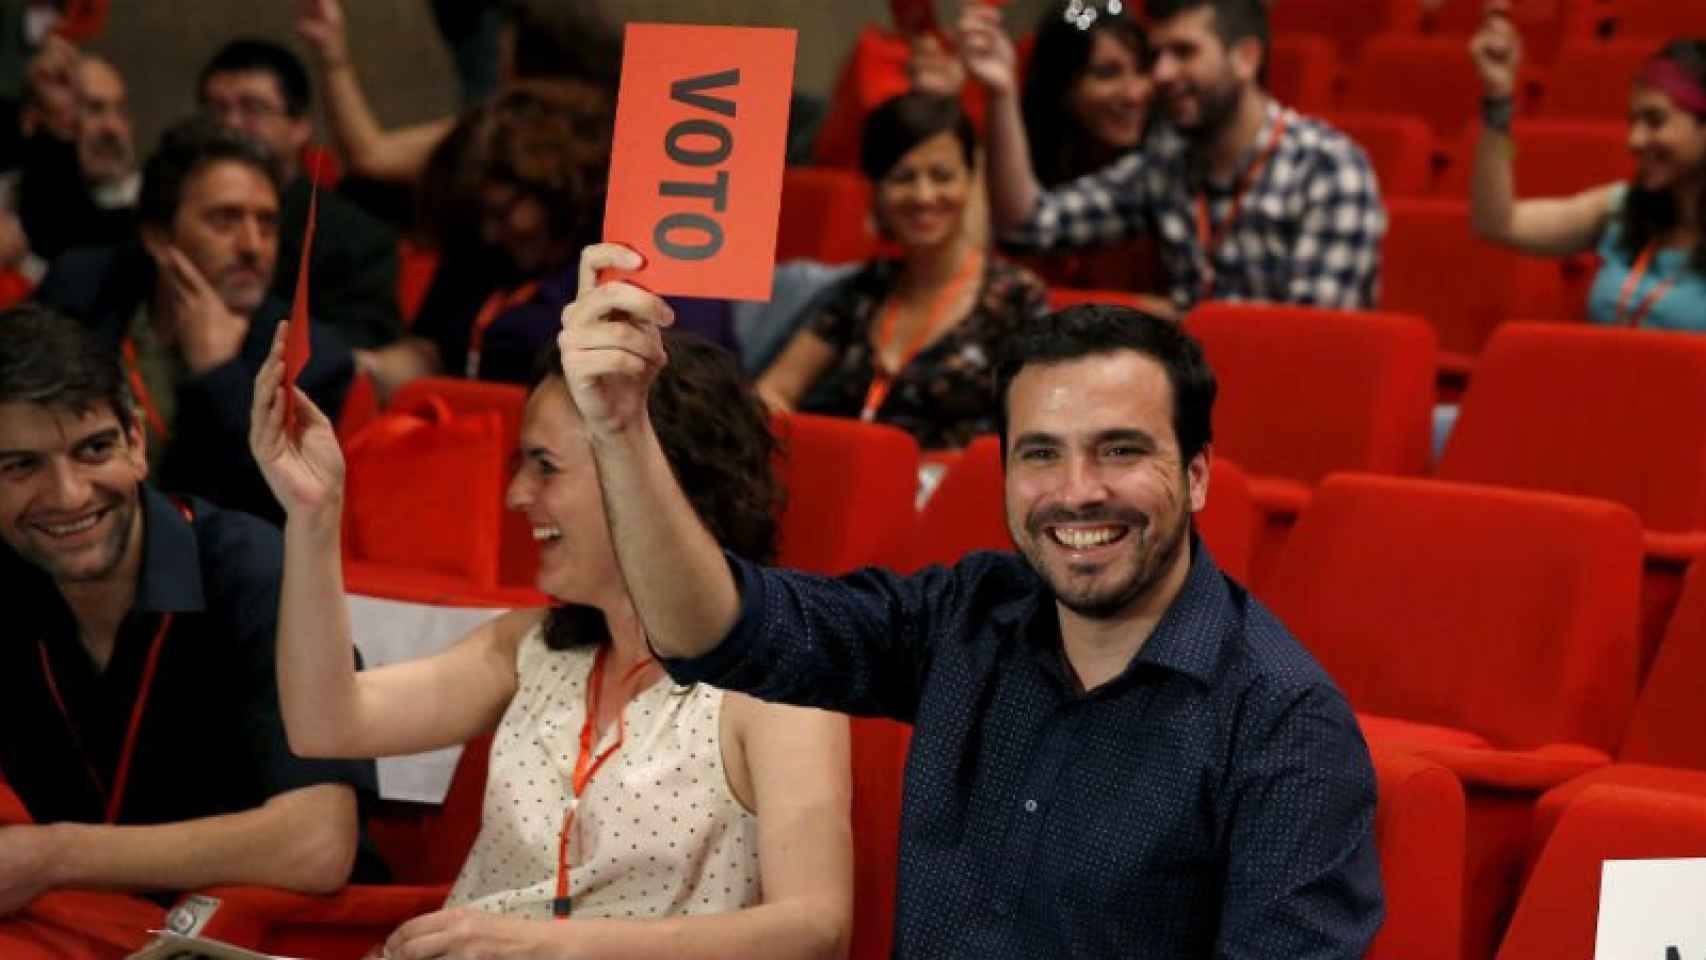 Alberto Garzón durante una de las votaciones en la XI Asamblea Federal de IU, en la que ha sido votado por unanimidad como nuevo coordinador.